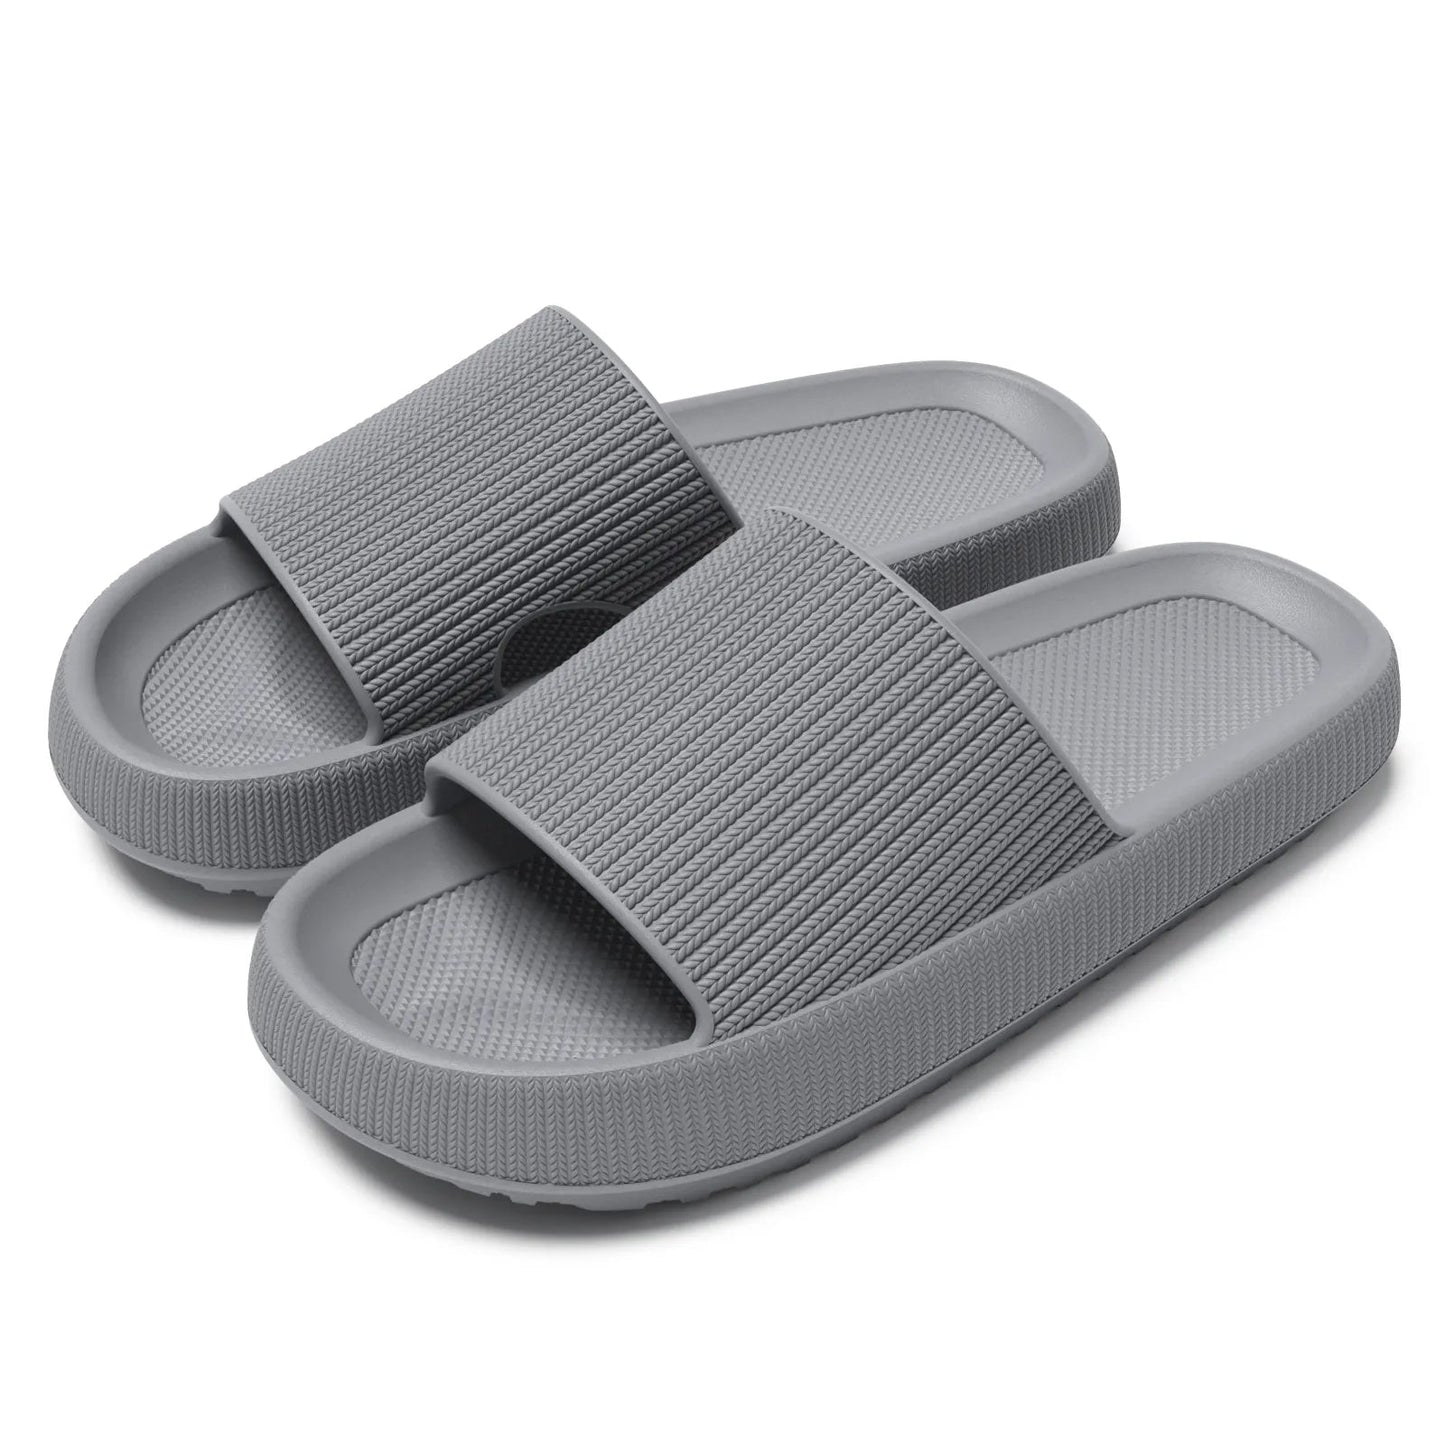 Vrouwen platform slippers - Comfortabele zomer sandalen met zachte eva zool - Bivakshop